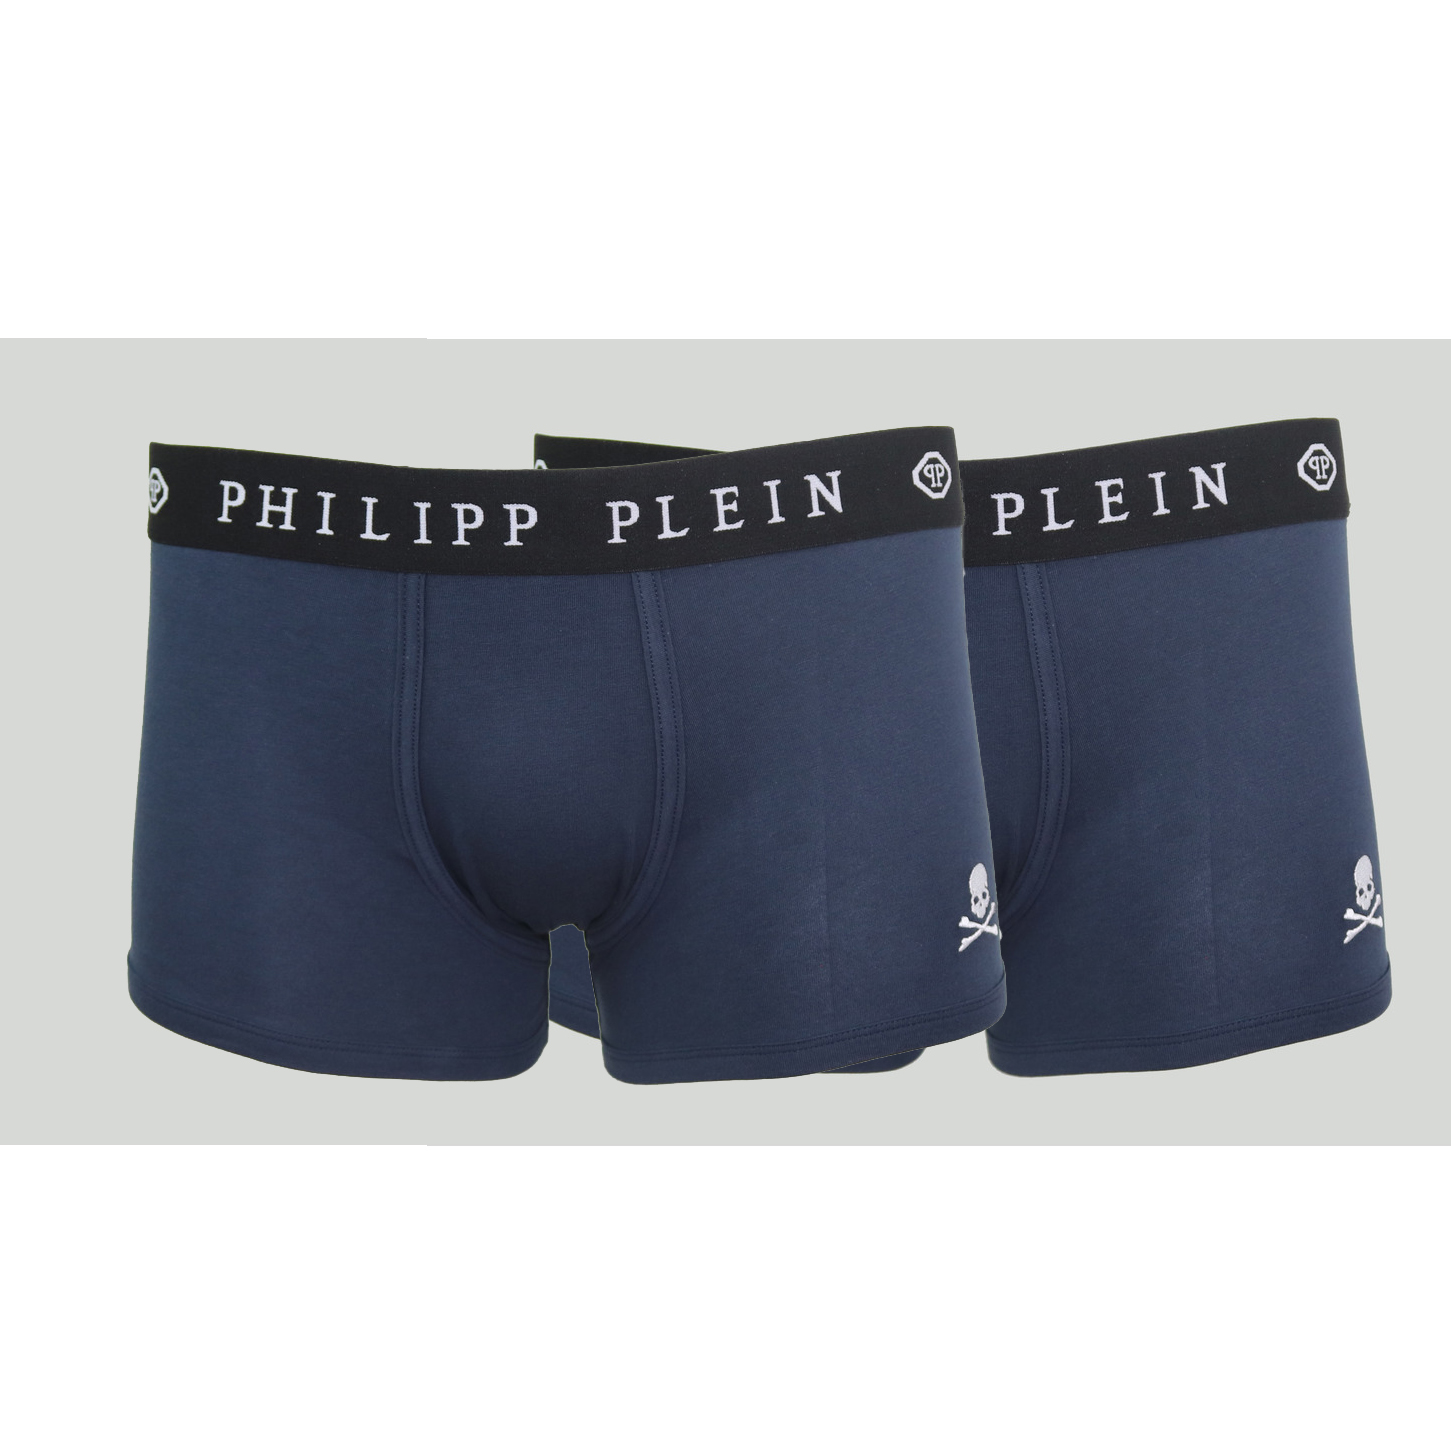 Herren Boxershorts Philipp Plein UUPB01-85_BI-PACK_NV